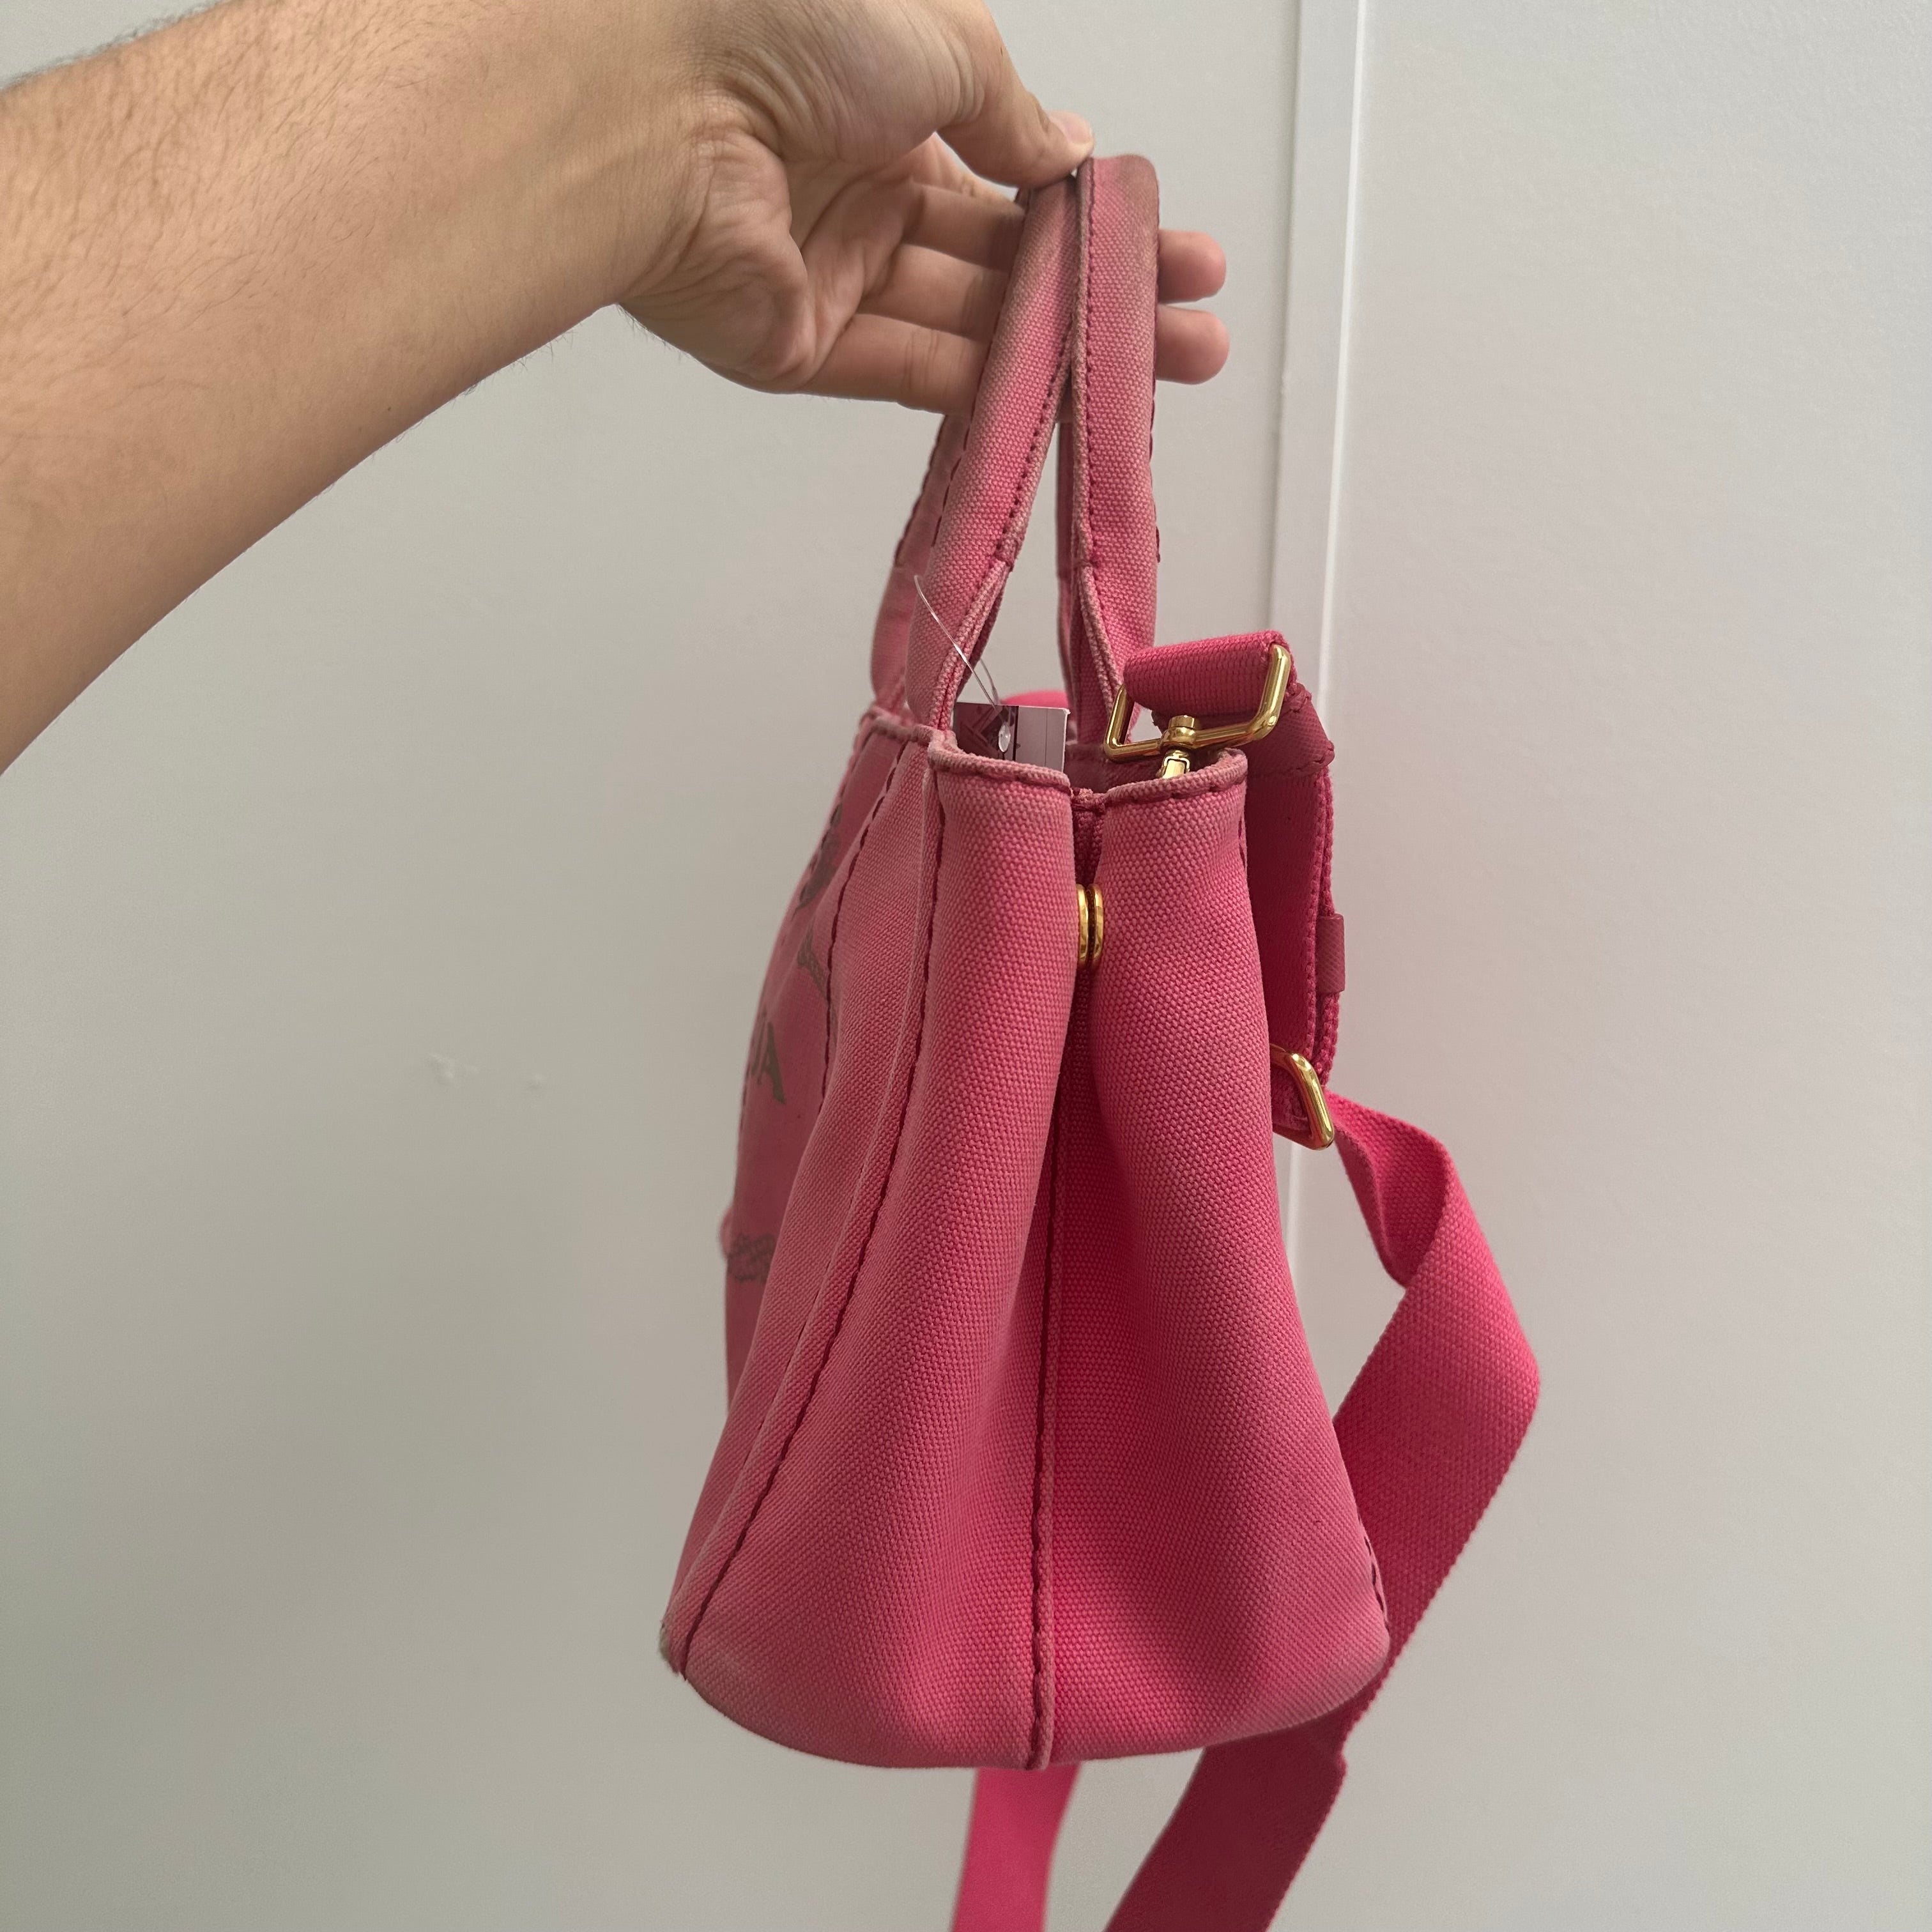 Prada Pink Small Canapa Tote Bag with Strap